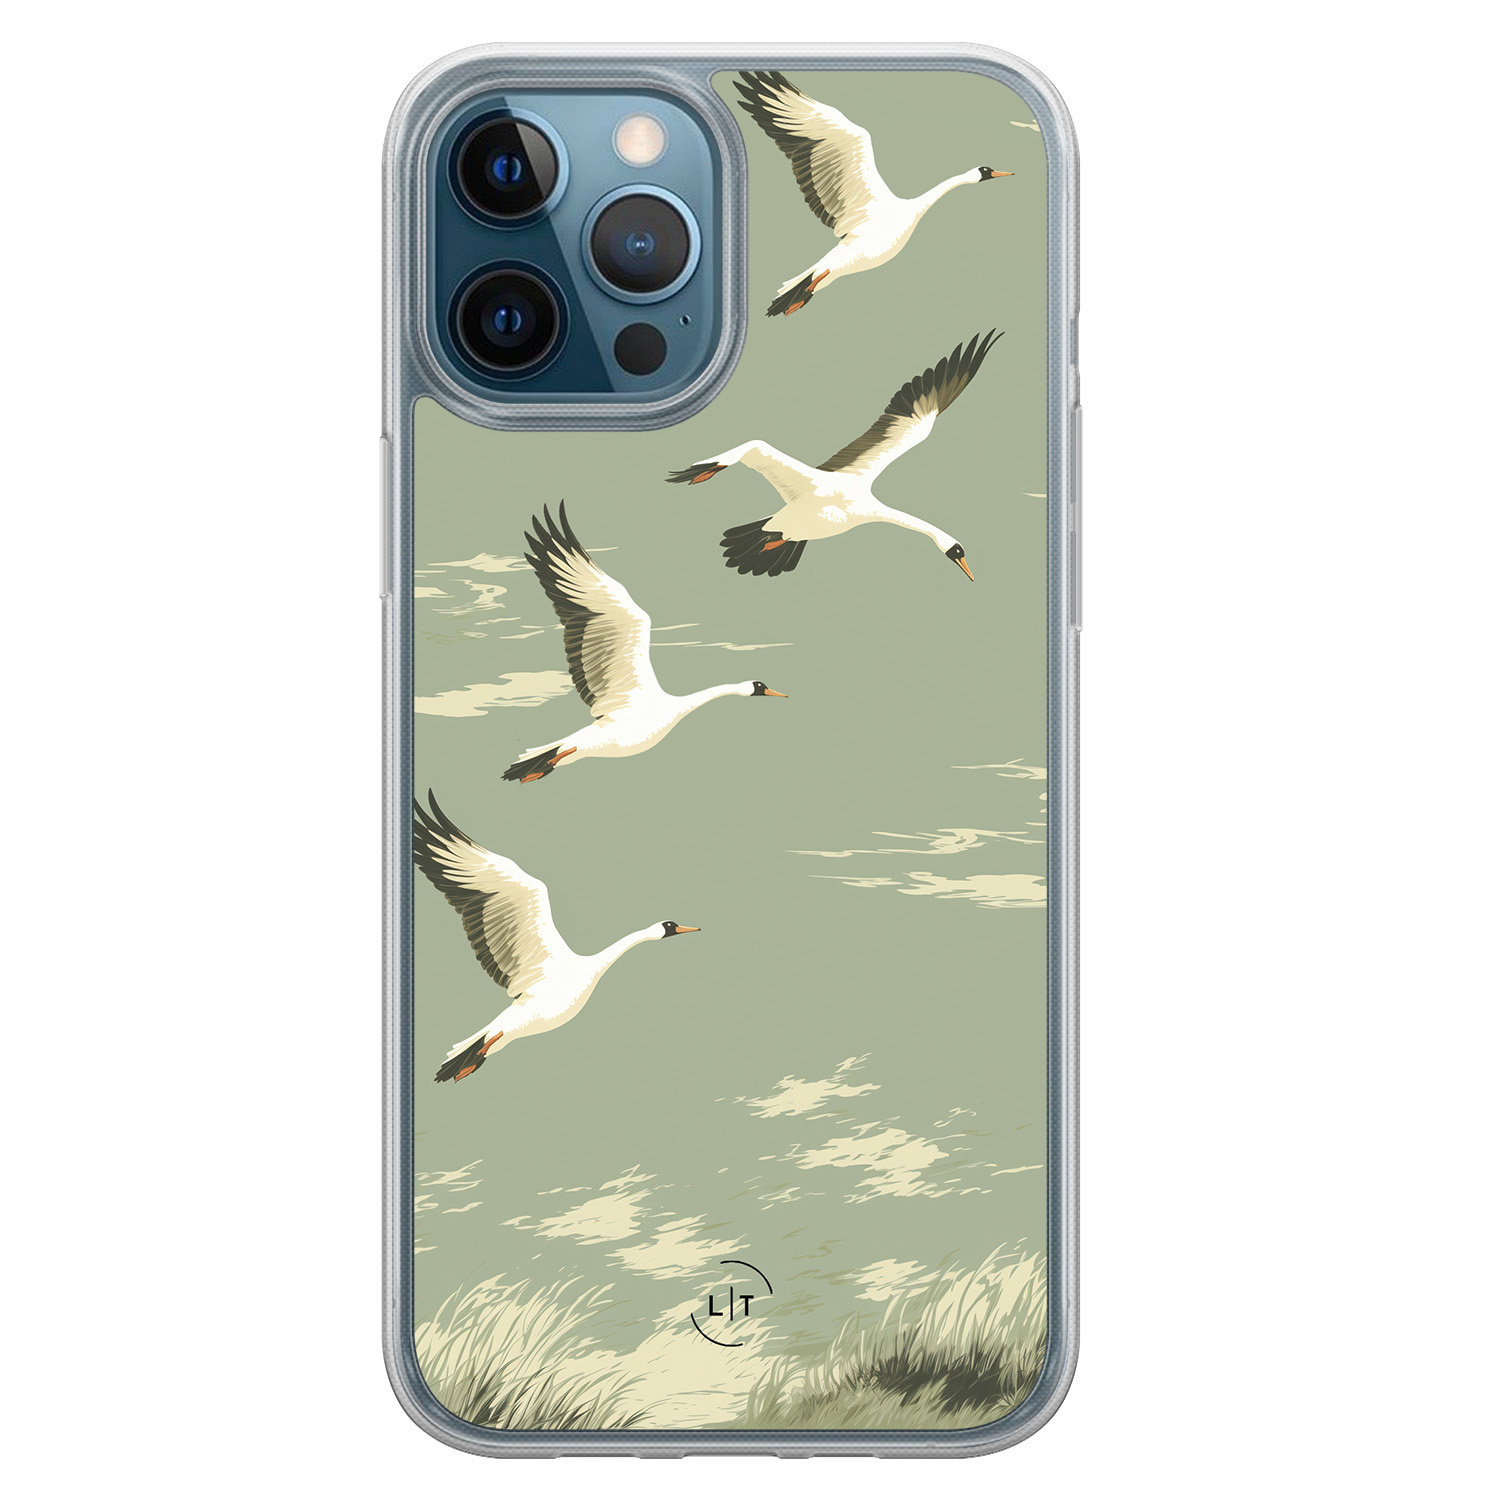 Leuke Telefoonhoesjes iPhone 12 (Pro) hybride hoesje - Vogels